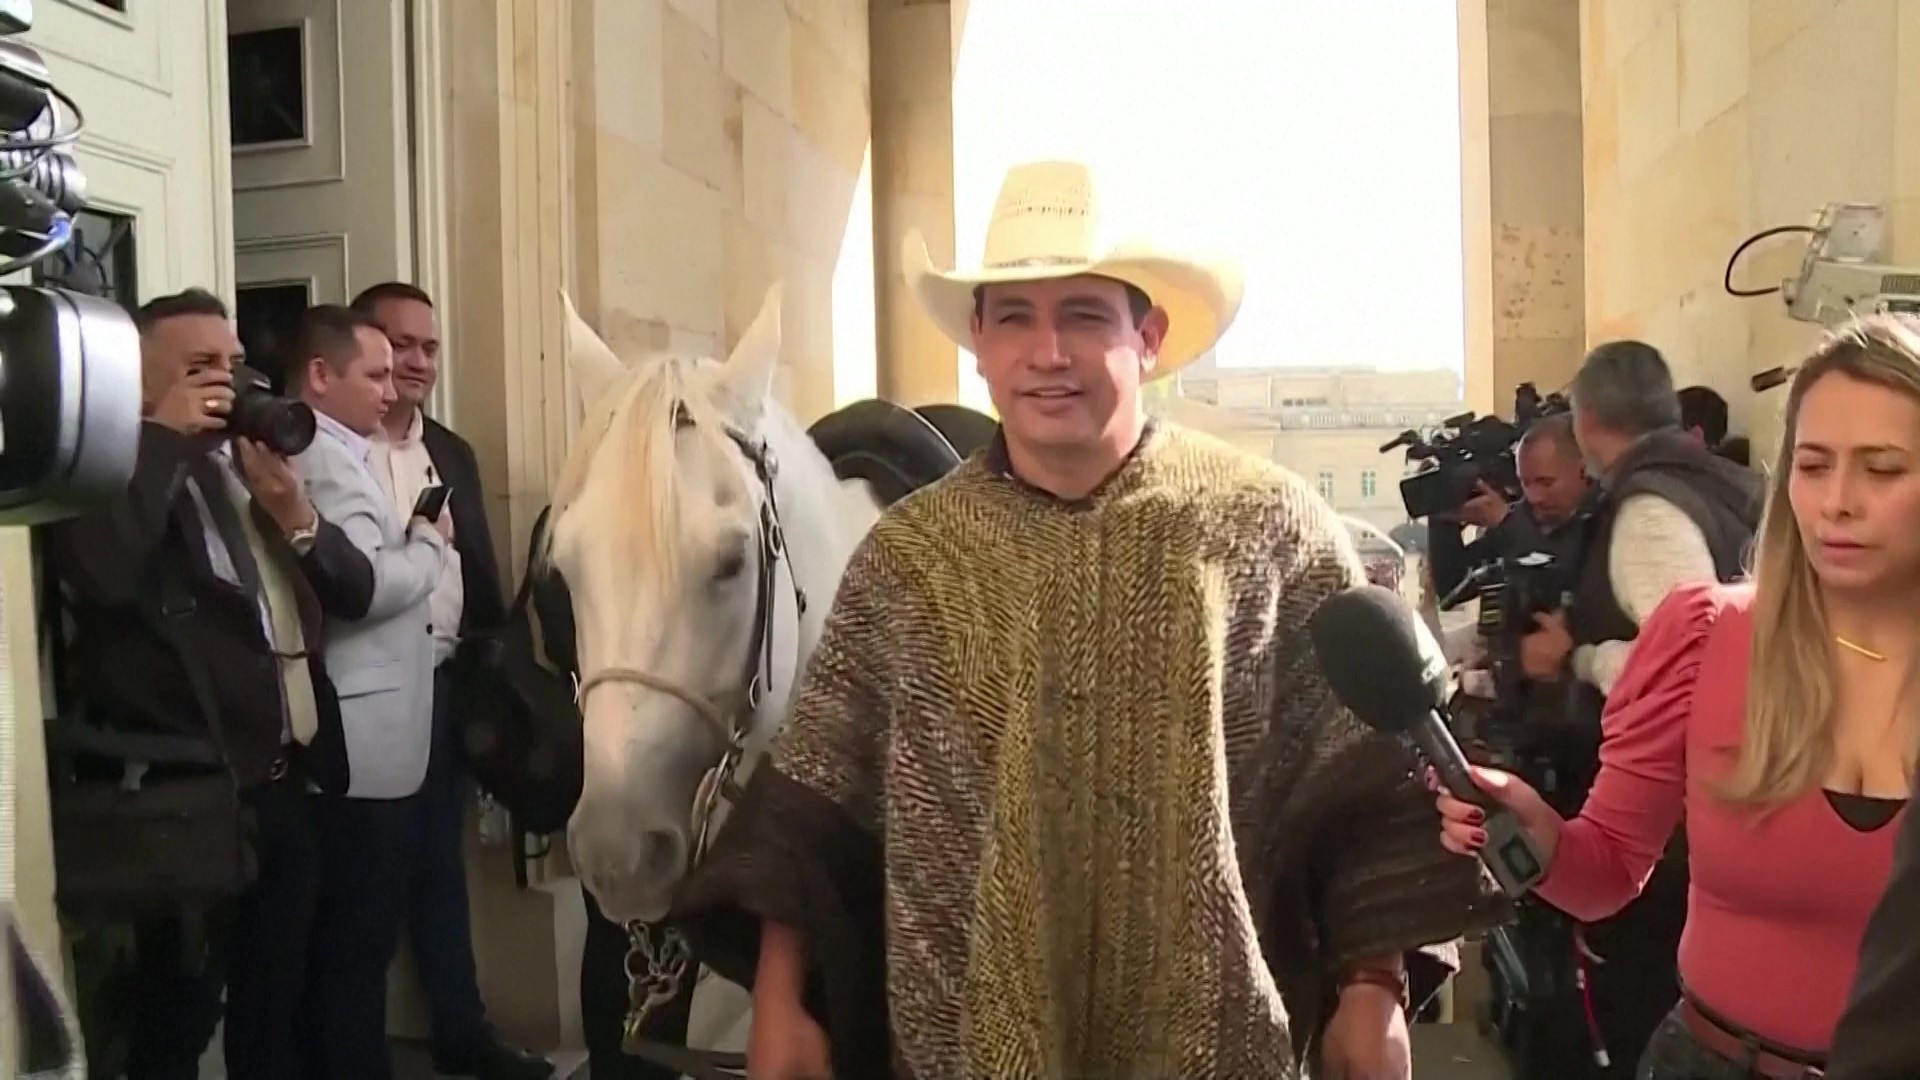 Congresso da Colômbia vira 'pet friendly' e senador leva cavalo